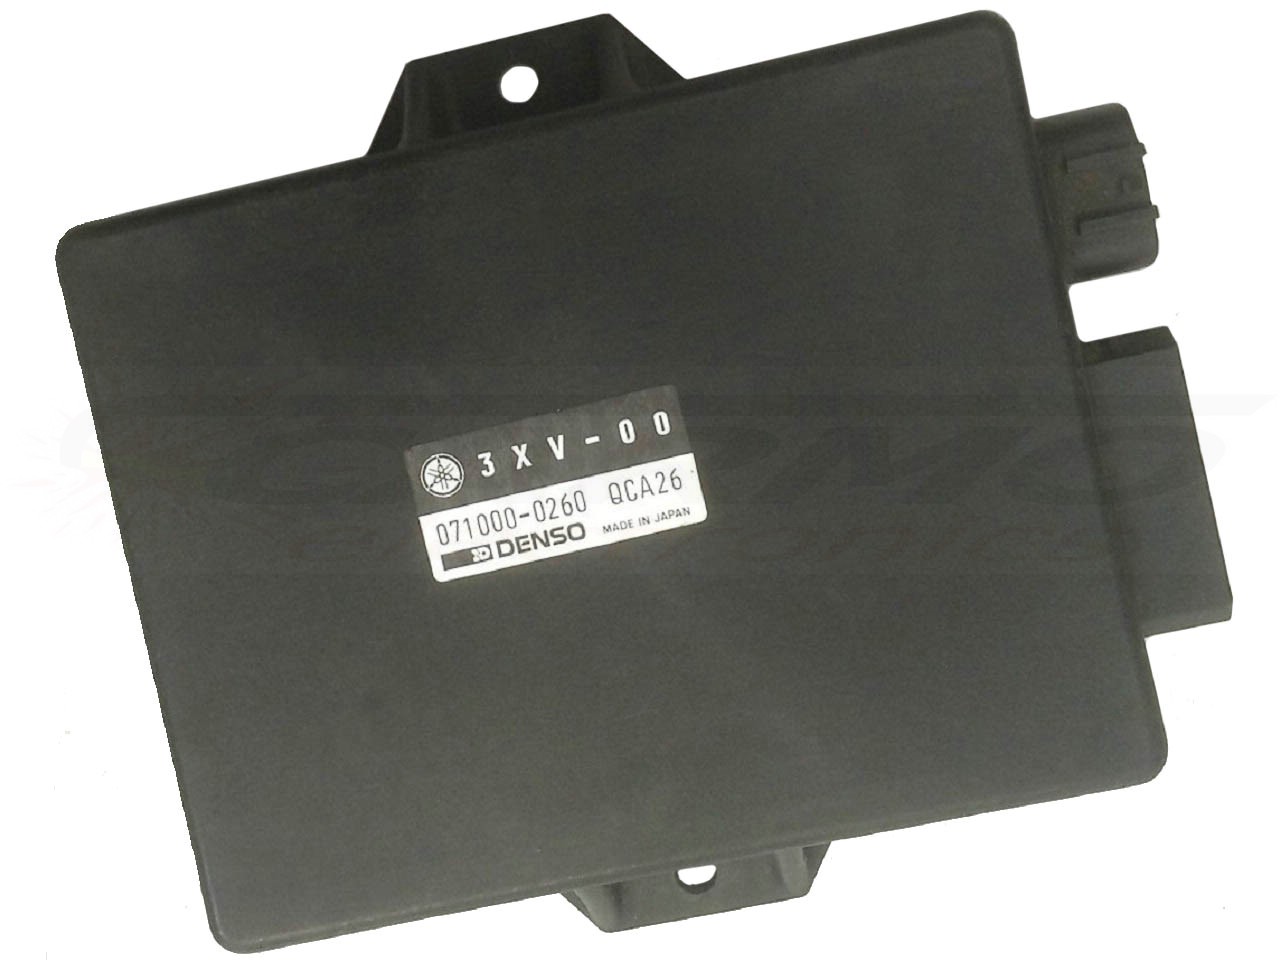 TZR250 TCI CDI dispositif de commande boîte noire (3XV-00)